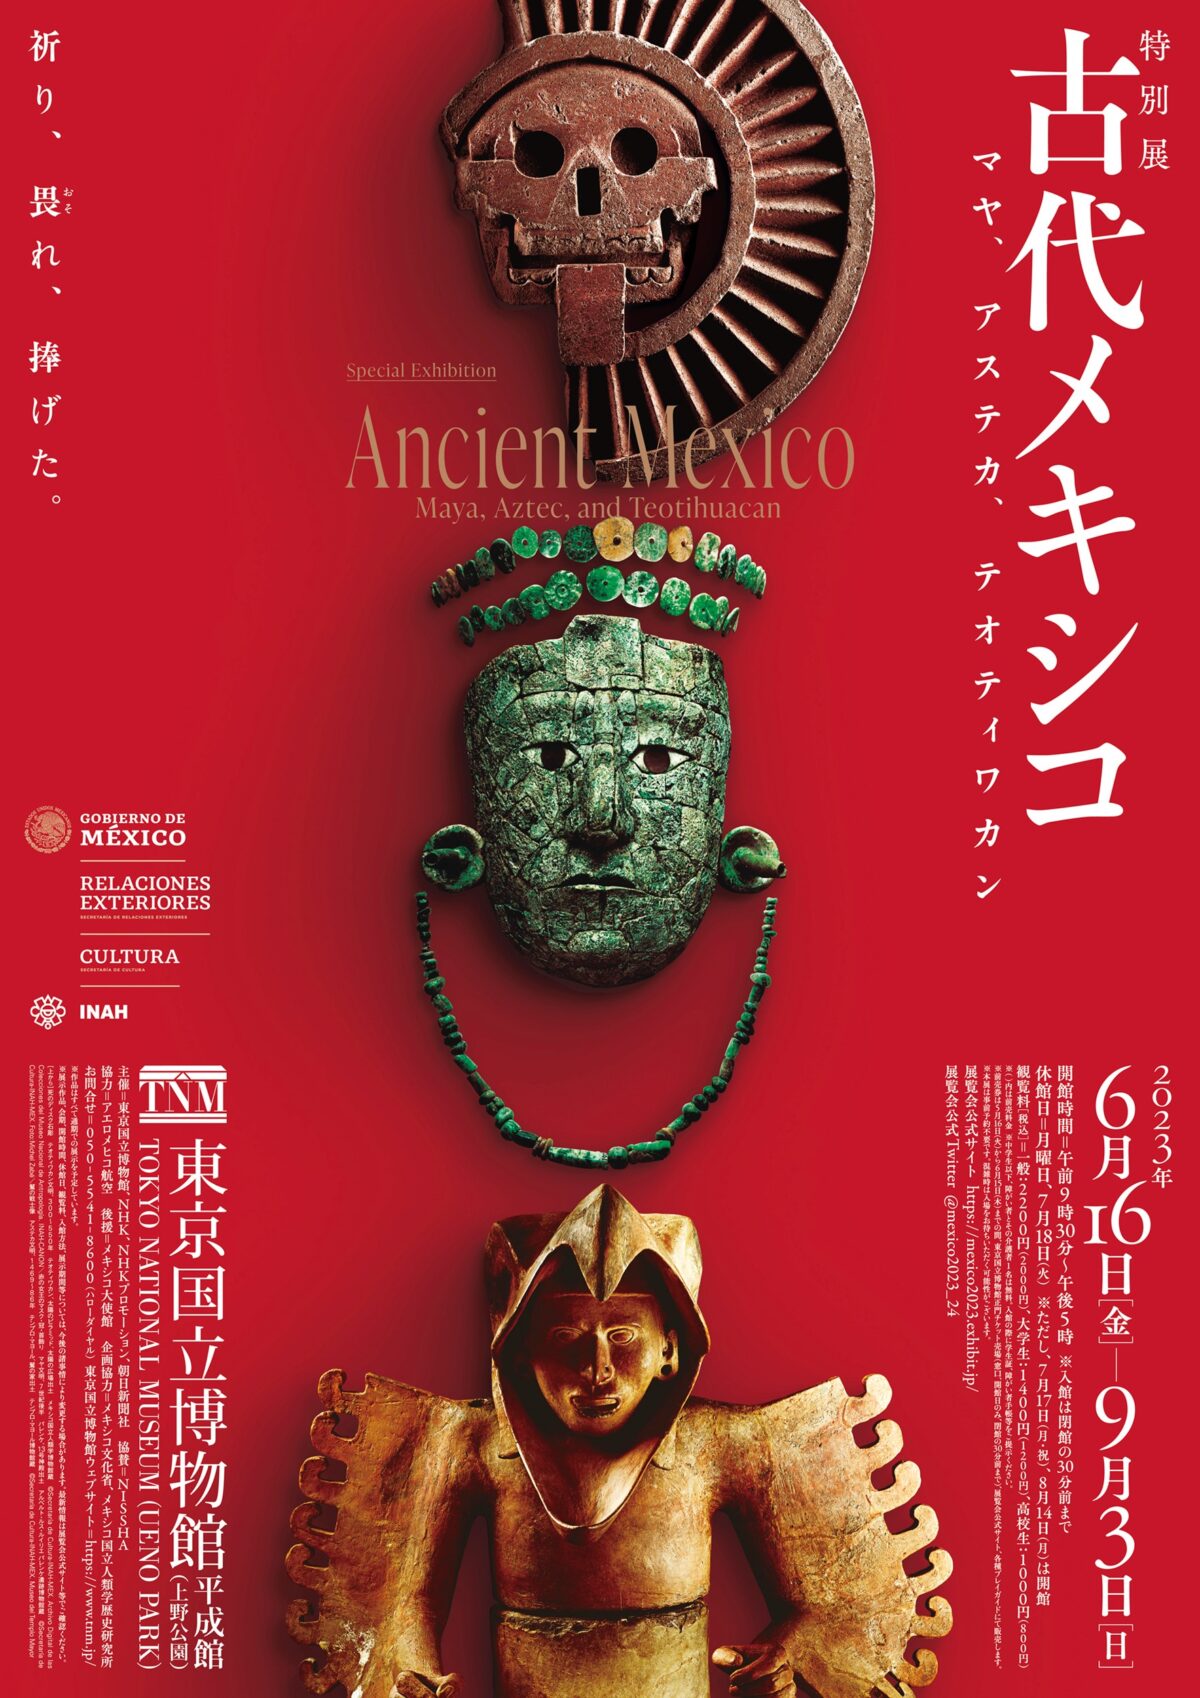 特別展「古代メキシコ - マヤ、アステカ、テオティワカン」